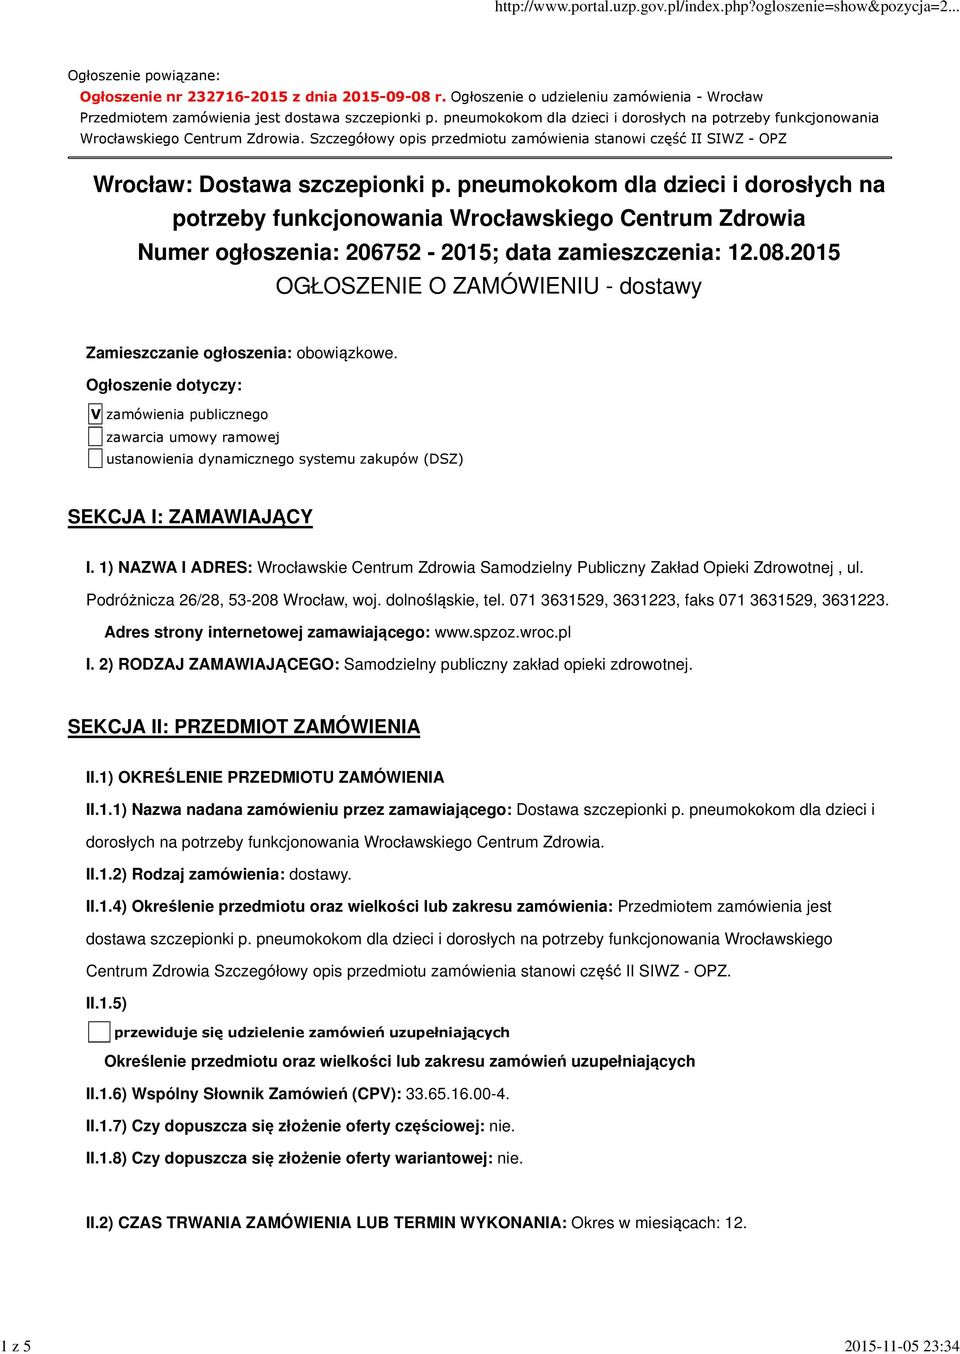 pneumokokom dla dzieci i dorosłych na potrzeby funkcjonowania Wrocławskiego Centrum Zdrowia Numer ogłoszenia: 206752-2015; data zamieszczenia: 12.08.